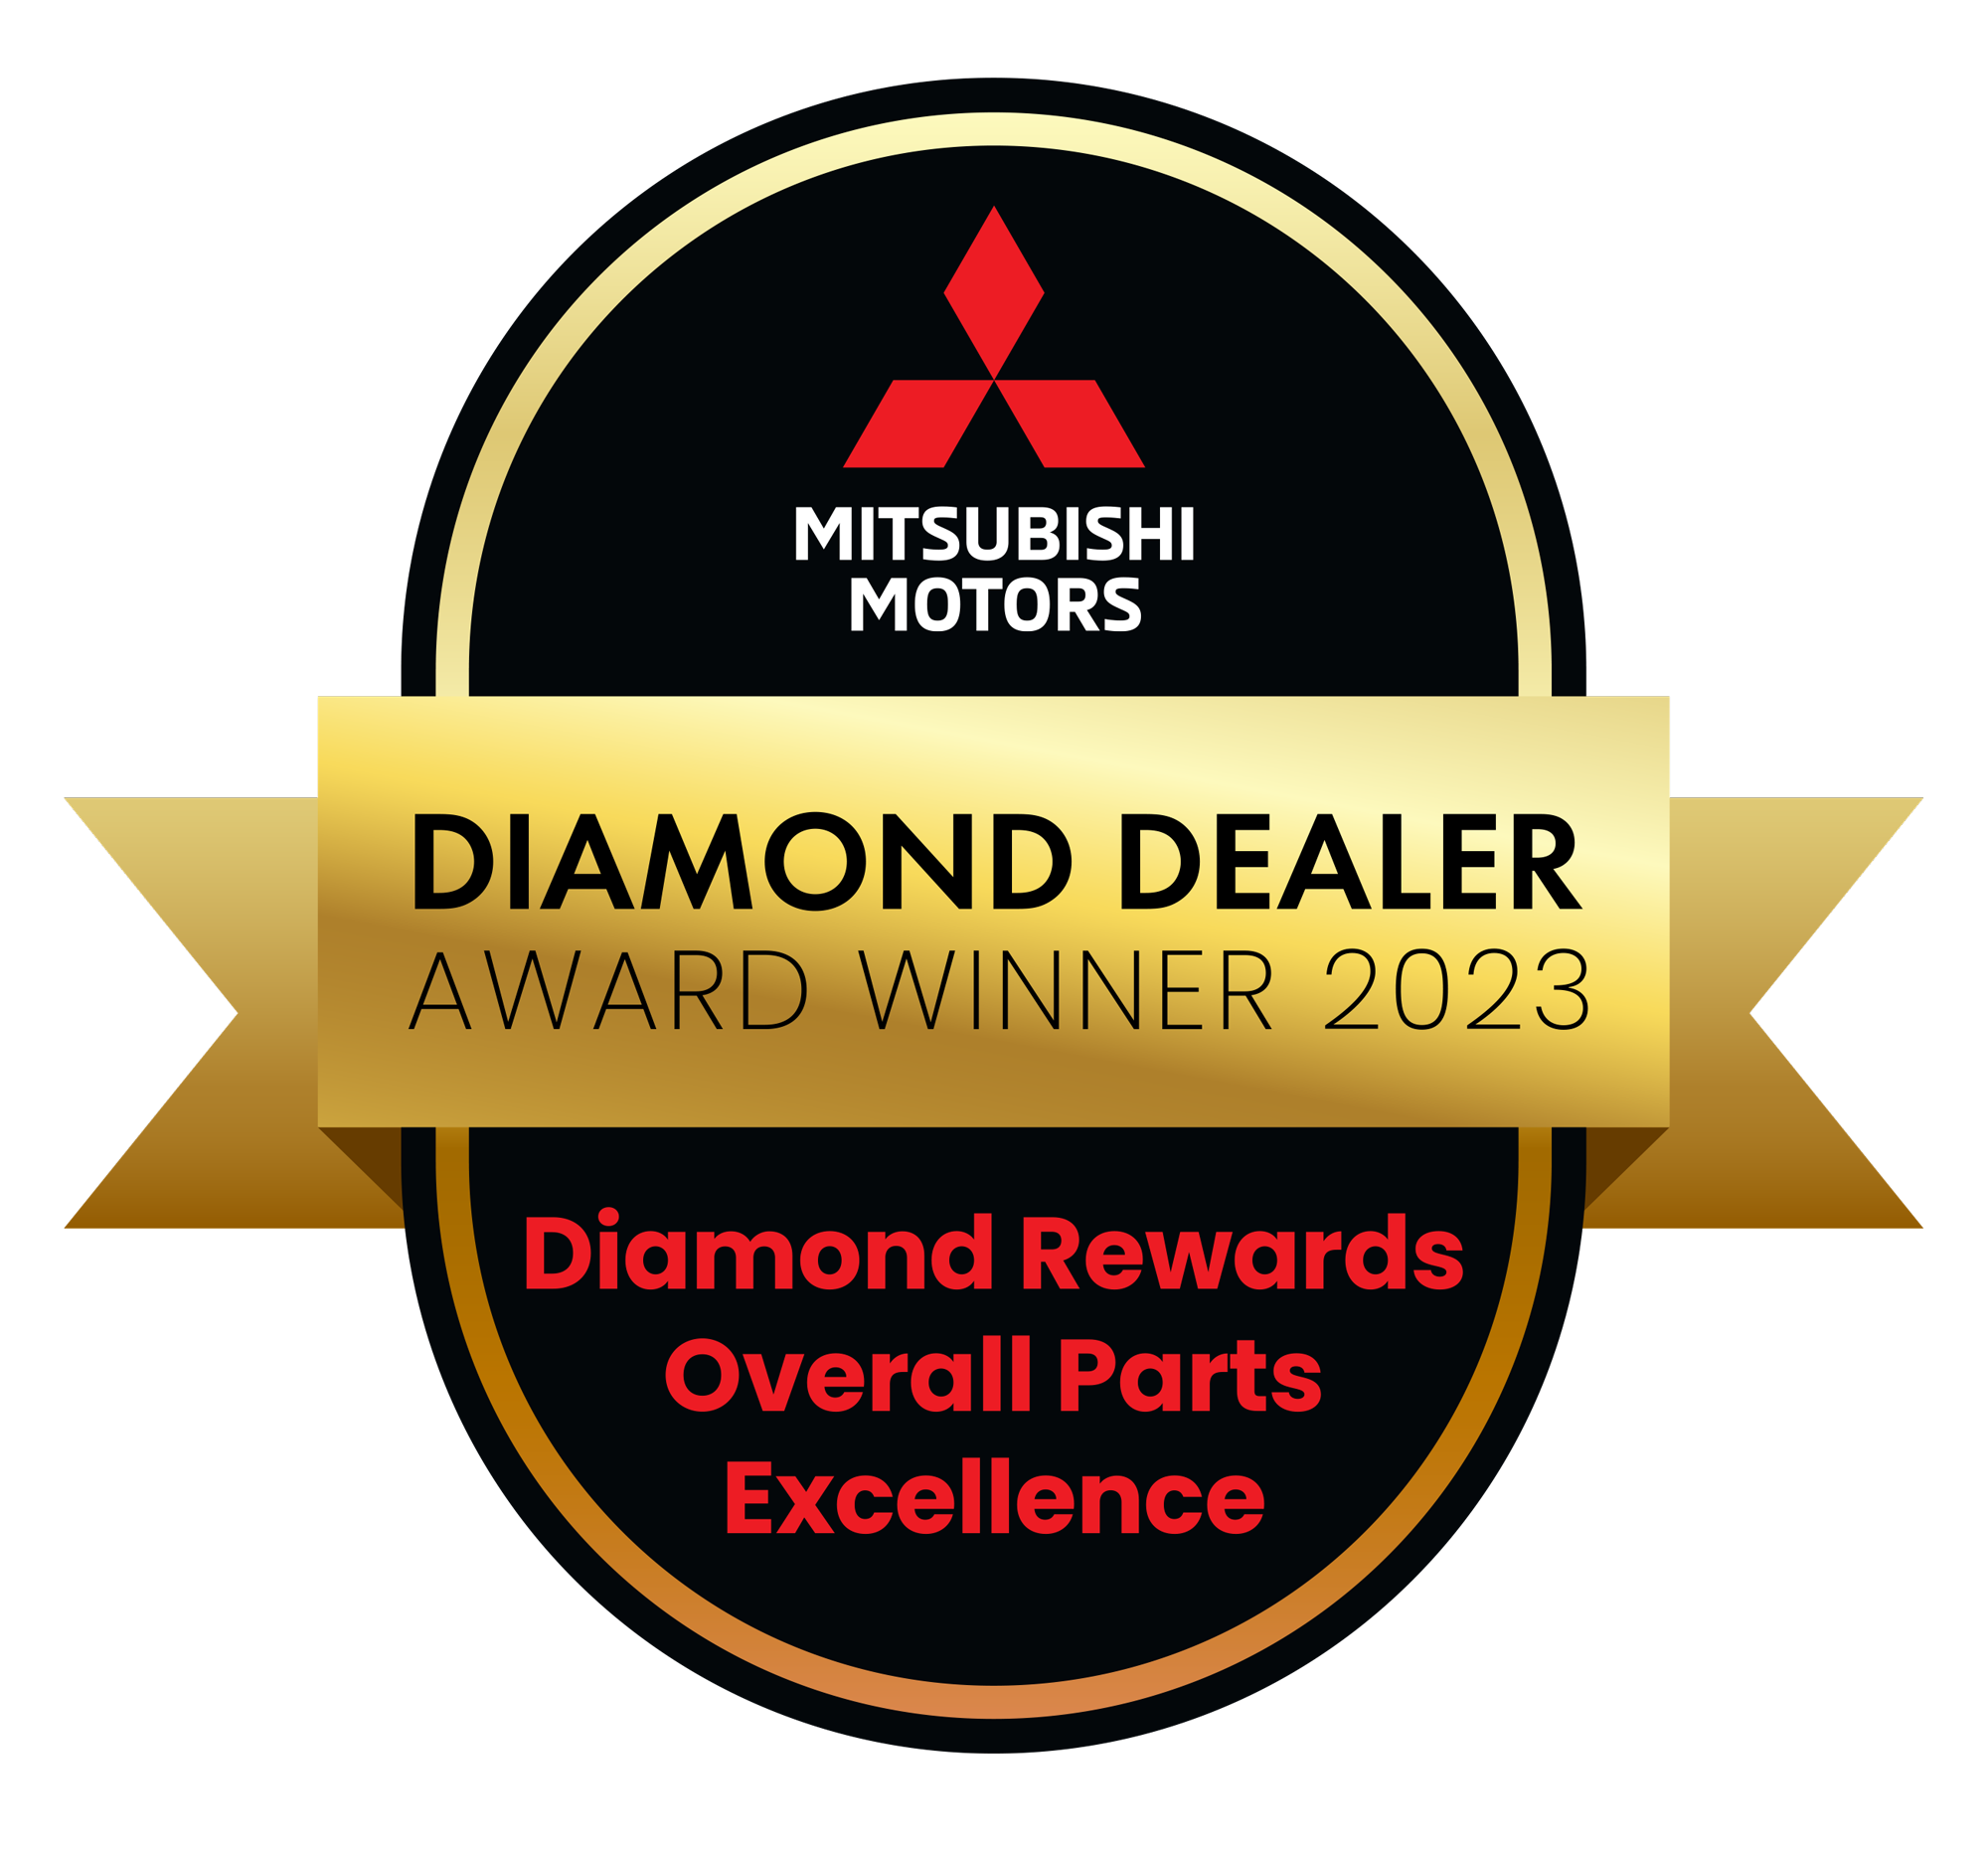 Diamond Dealer Award Winner 2023